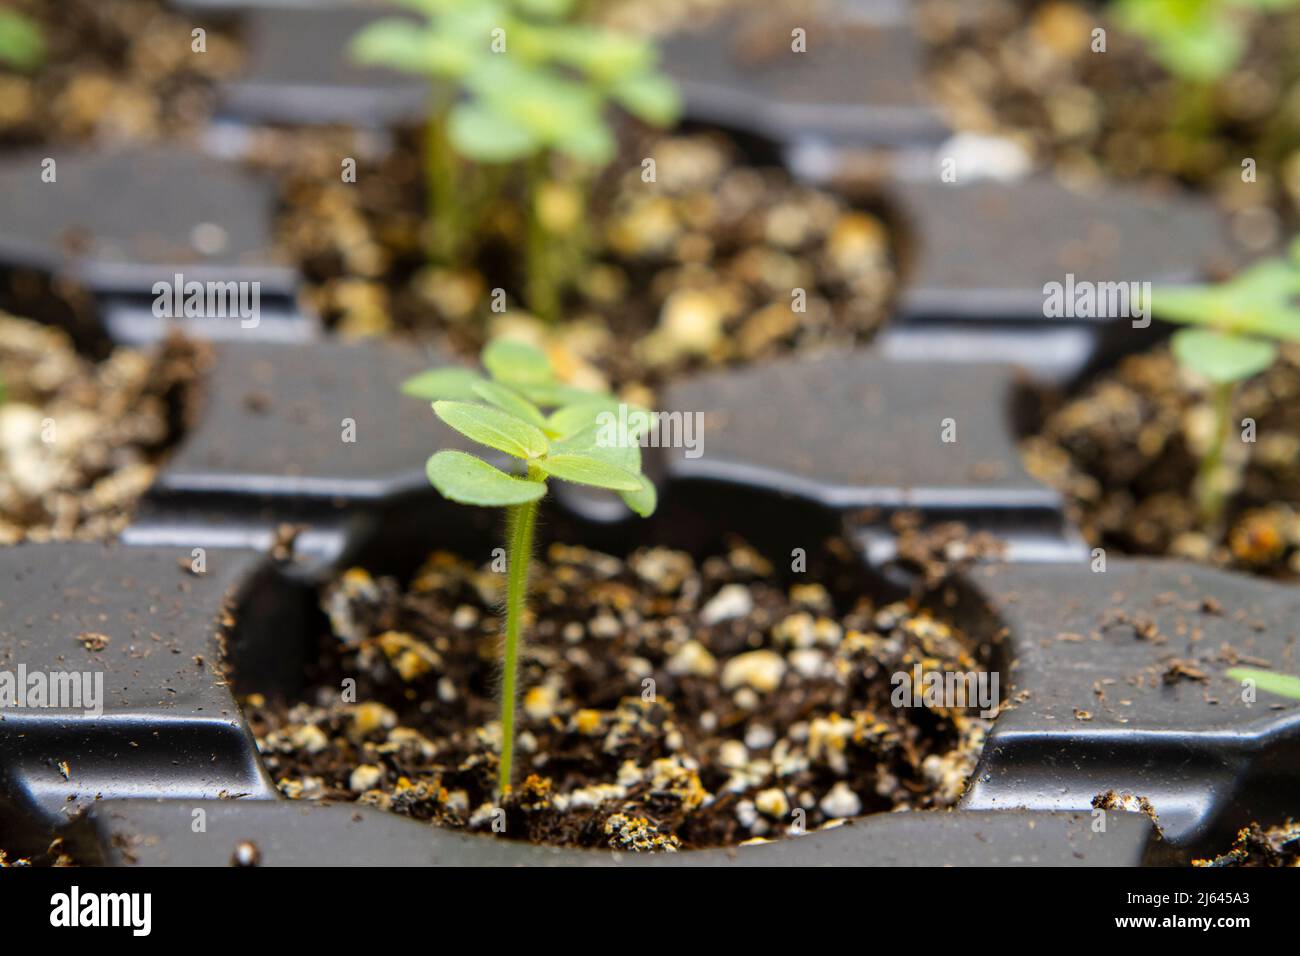 Primo piano immagine di minuscoli piantine Snapdragon (Antirrhinum majus) che crescono in vassoi di partenza semi sotto luci interne. Foto Stock